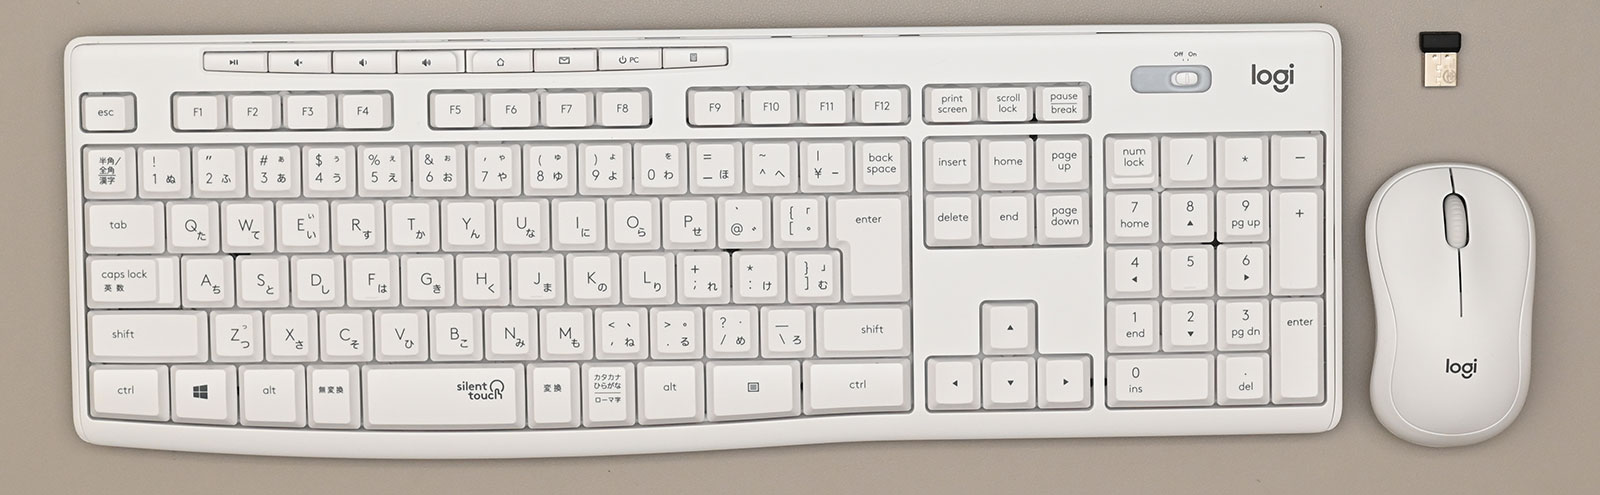 初心者に最適なキーボード・マウス MK295 - PCまなぶ